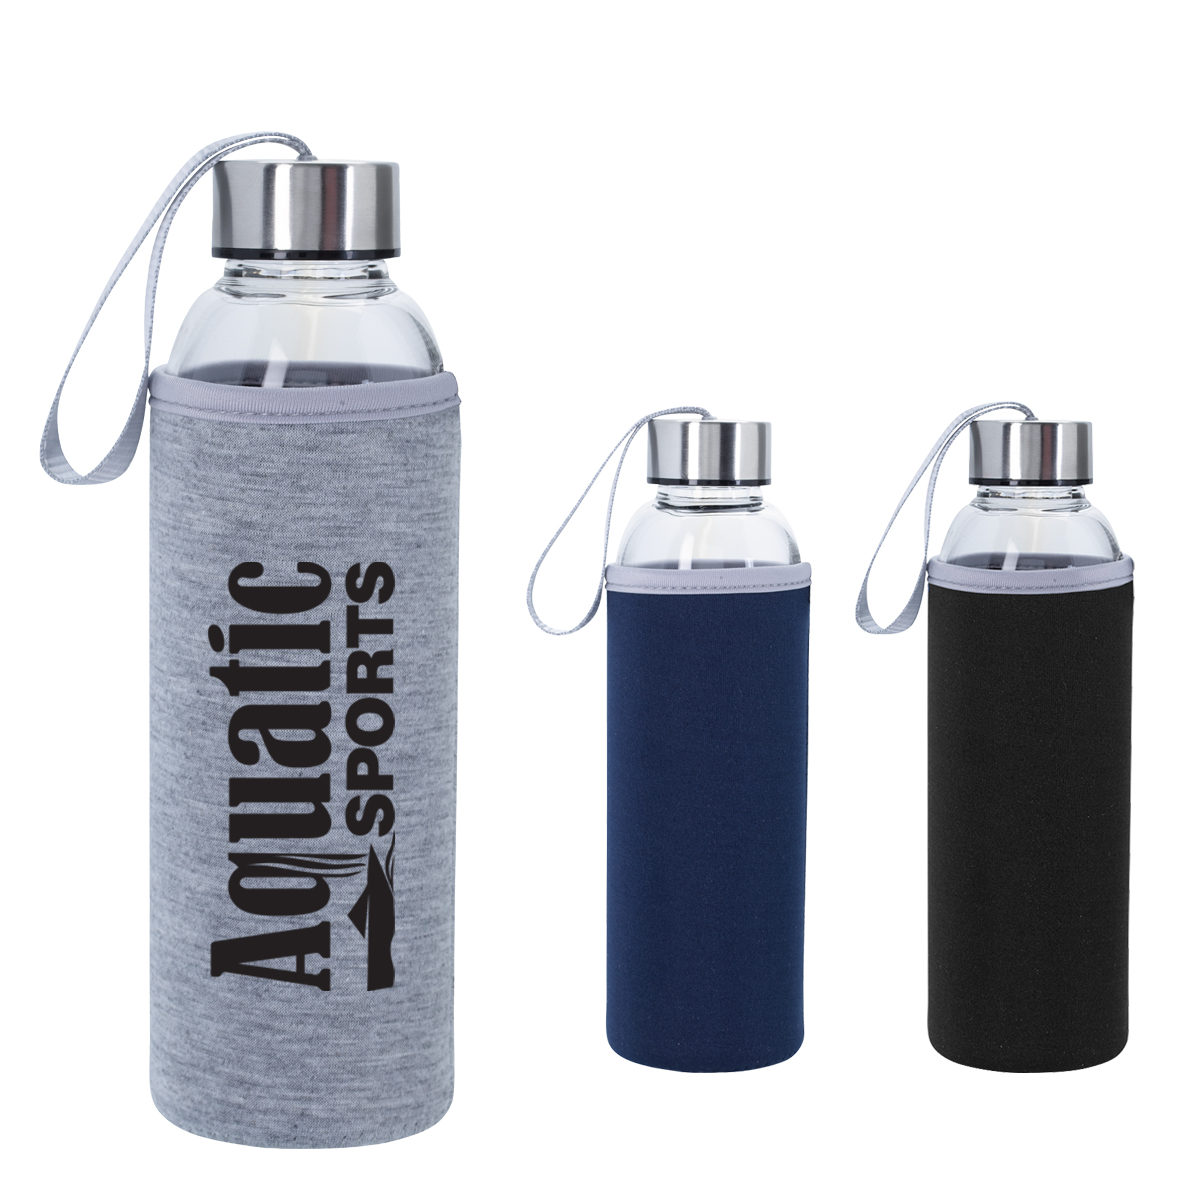 Brieftons Botellas de agua de vidrio con tapas: transparente, paquete de 6,  18 onzas, tapas a prueba…Ver más Brieftons Botellas de agua de vidrio con